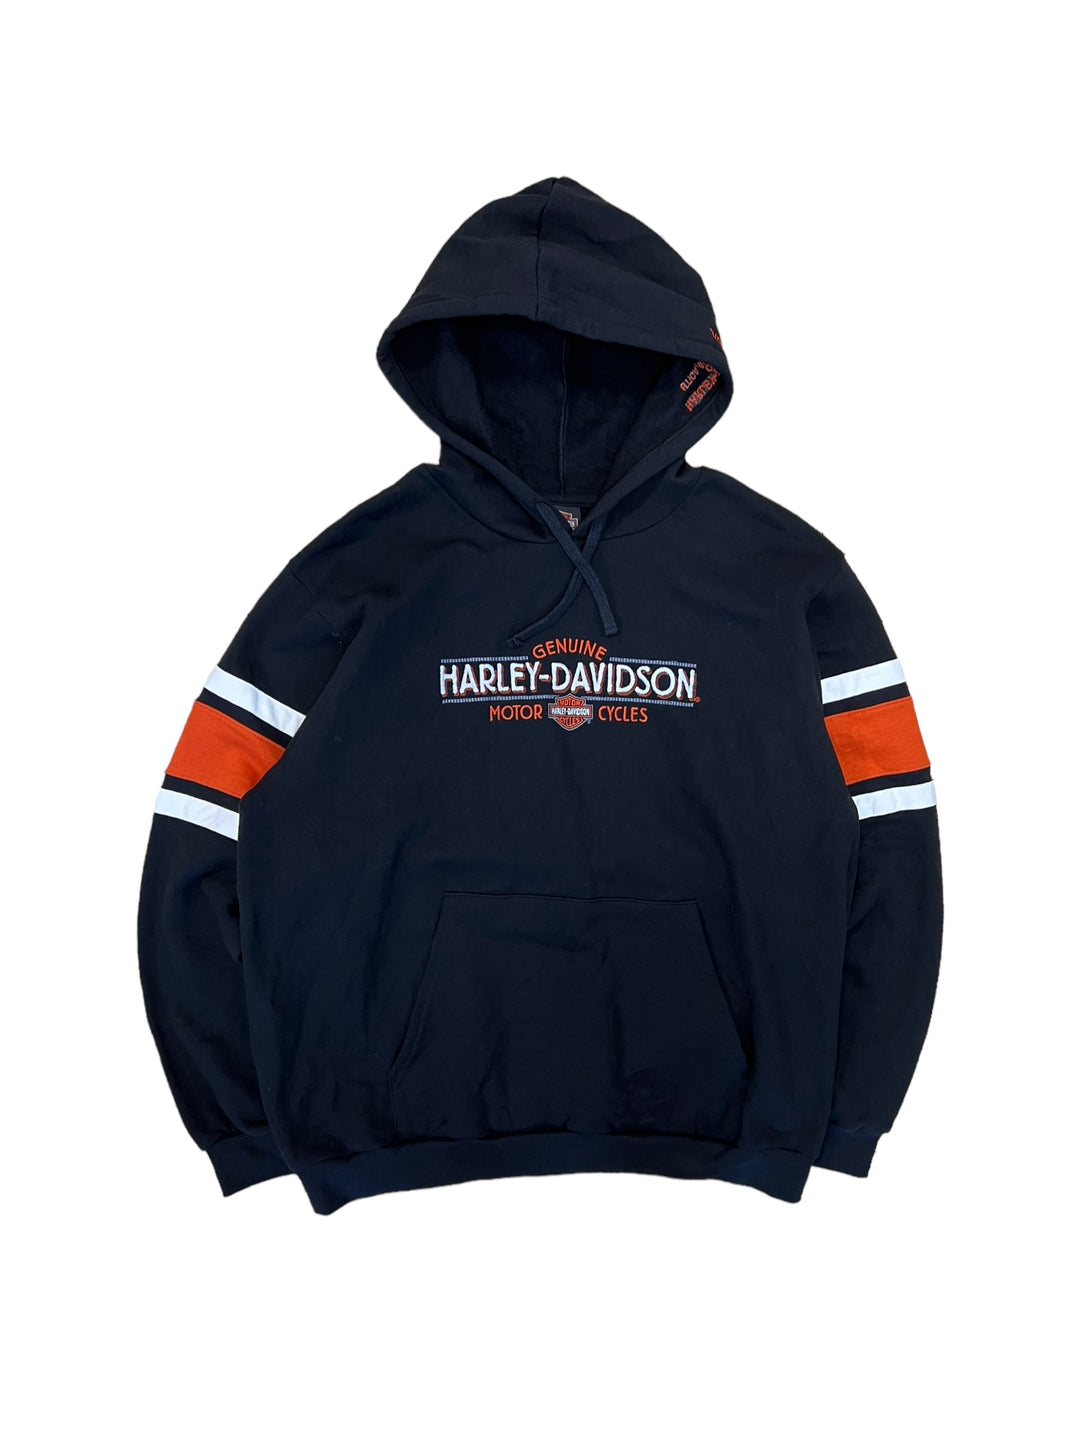 Harley-Davidson vintage hoodie men’s M/L